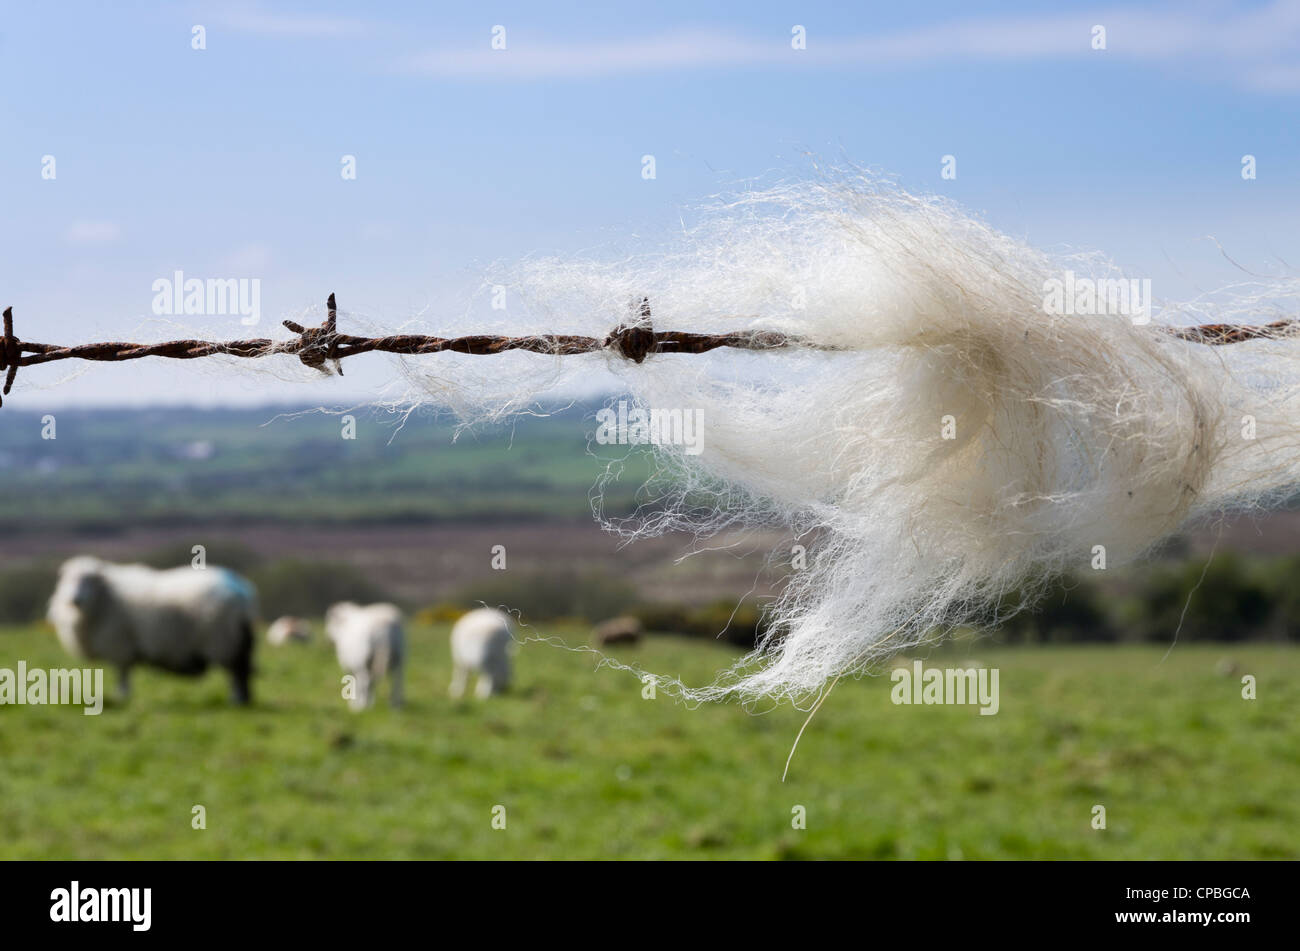 La laine des moutons accroché à une clôture en fil barbelé avec des moutons dans un champ agricole au-delà. Pays de Galles Royaume-uni Grande-Bretagne Banque D'Images